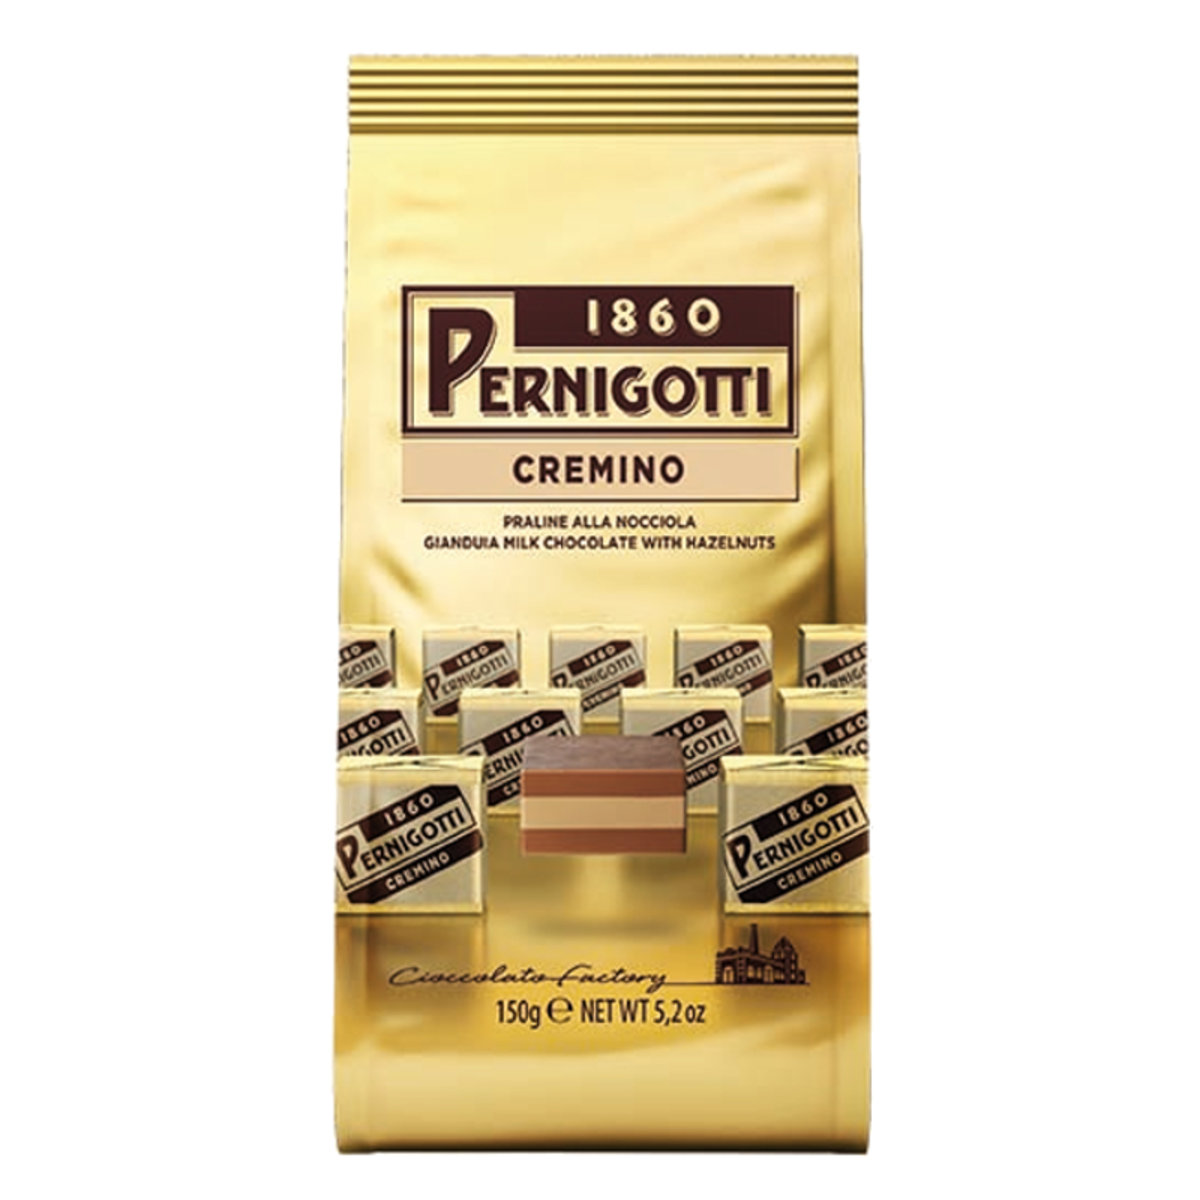 Italian Cremino Hazelnut Chocolate 150g 